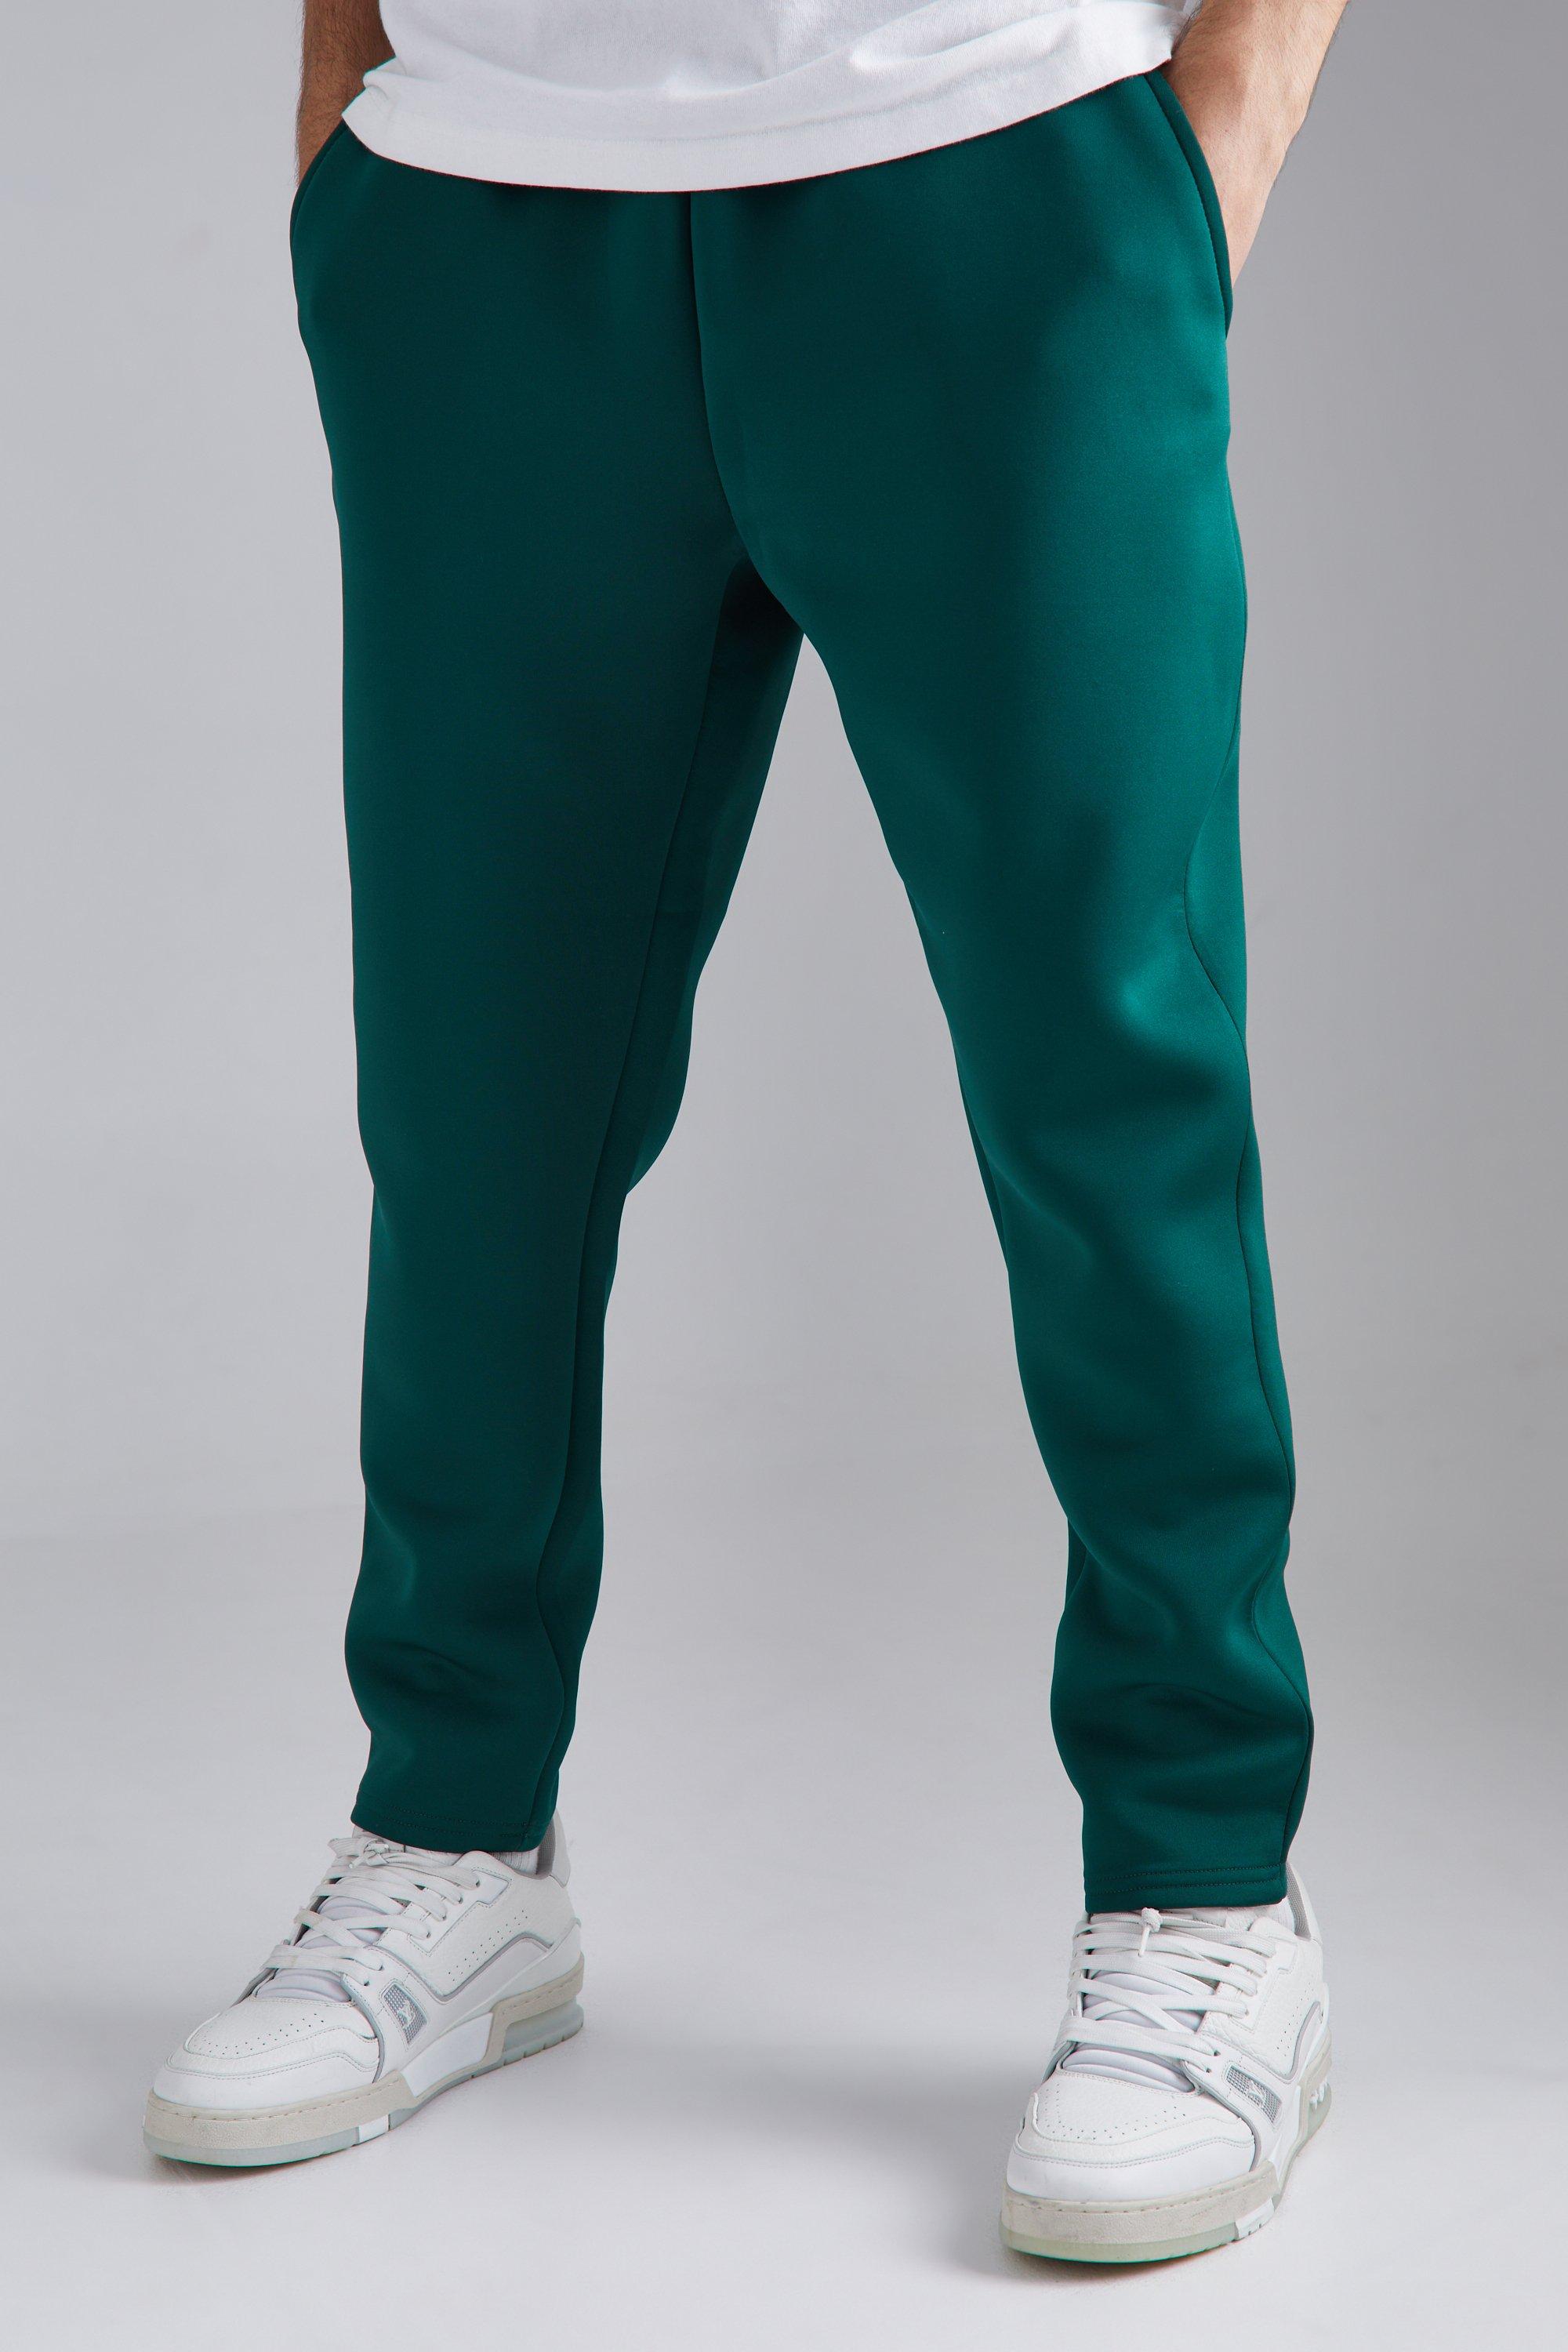 Image of Pantaloni tuta affusolati Slim Fit in Scuba rivestito, Verde